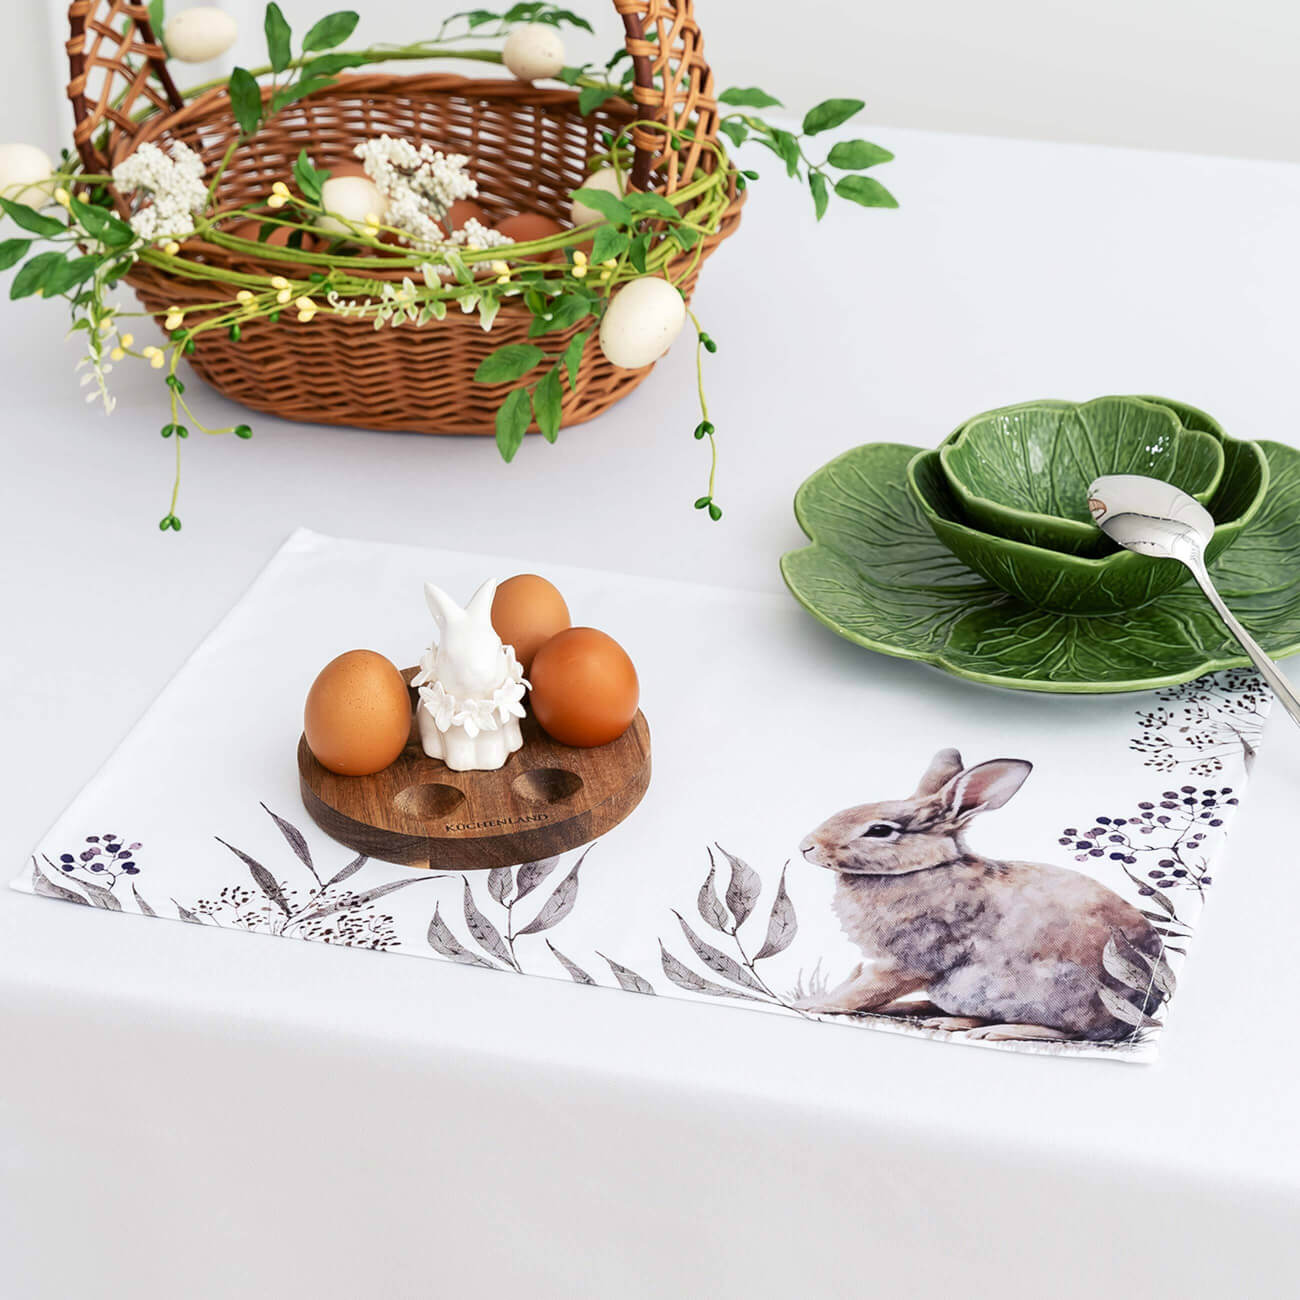 Салфетка под приборы, 30x45 см, полиэстер, белая, Кролик в листве, Natural Easter фланелевая салфетка главдор